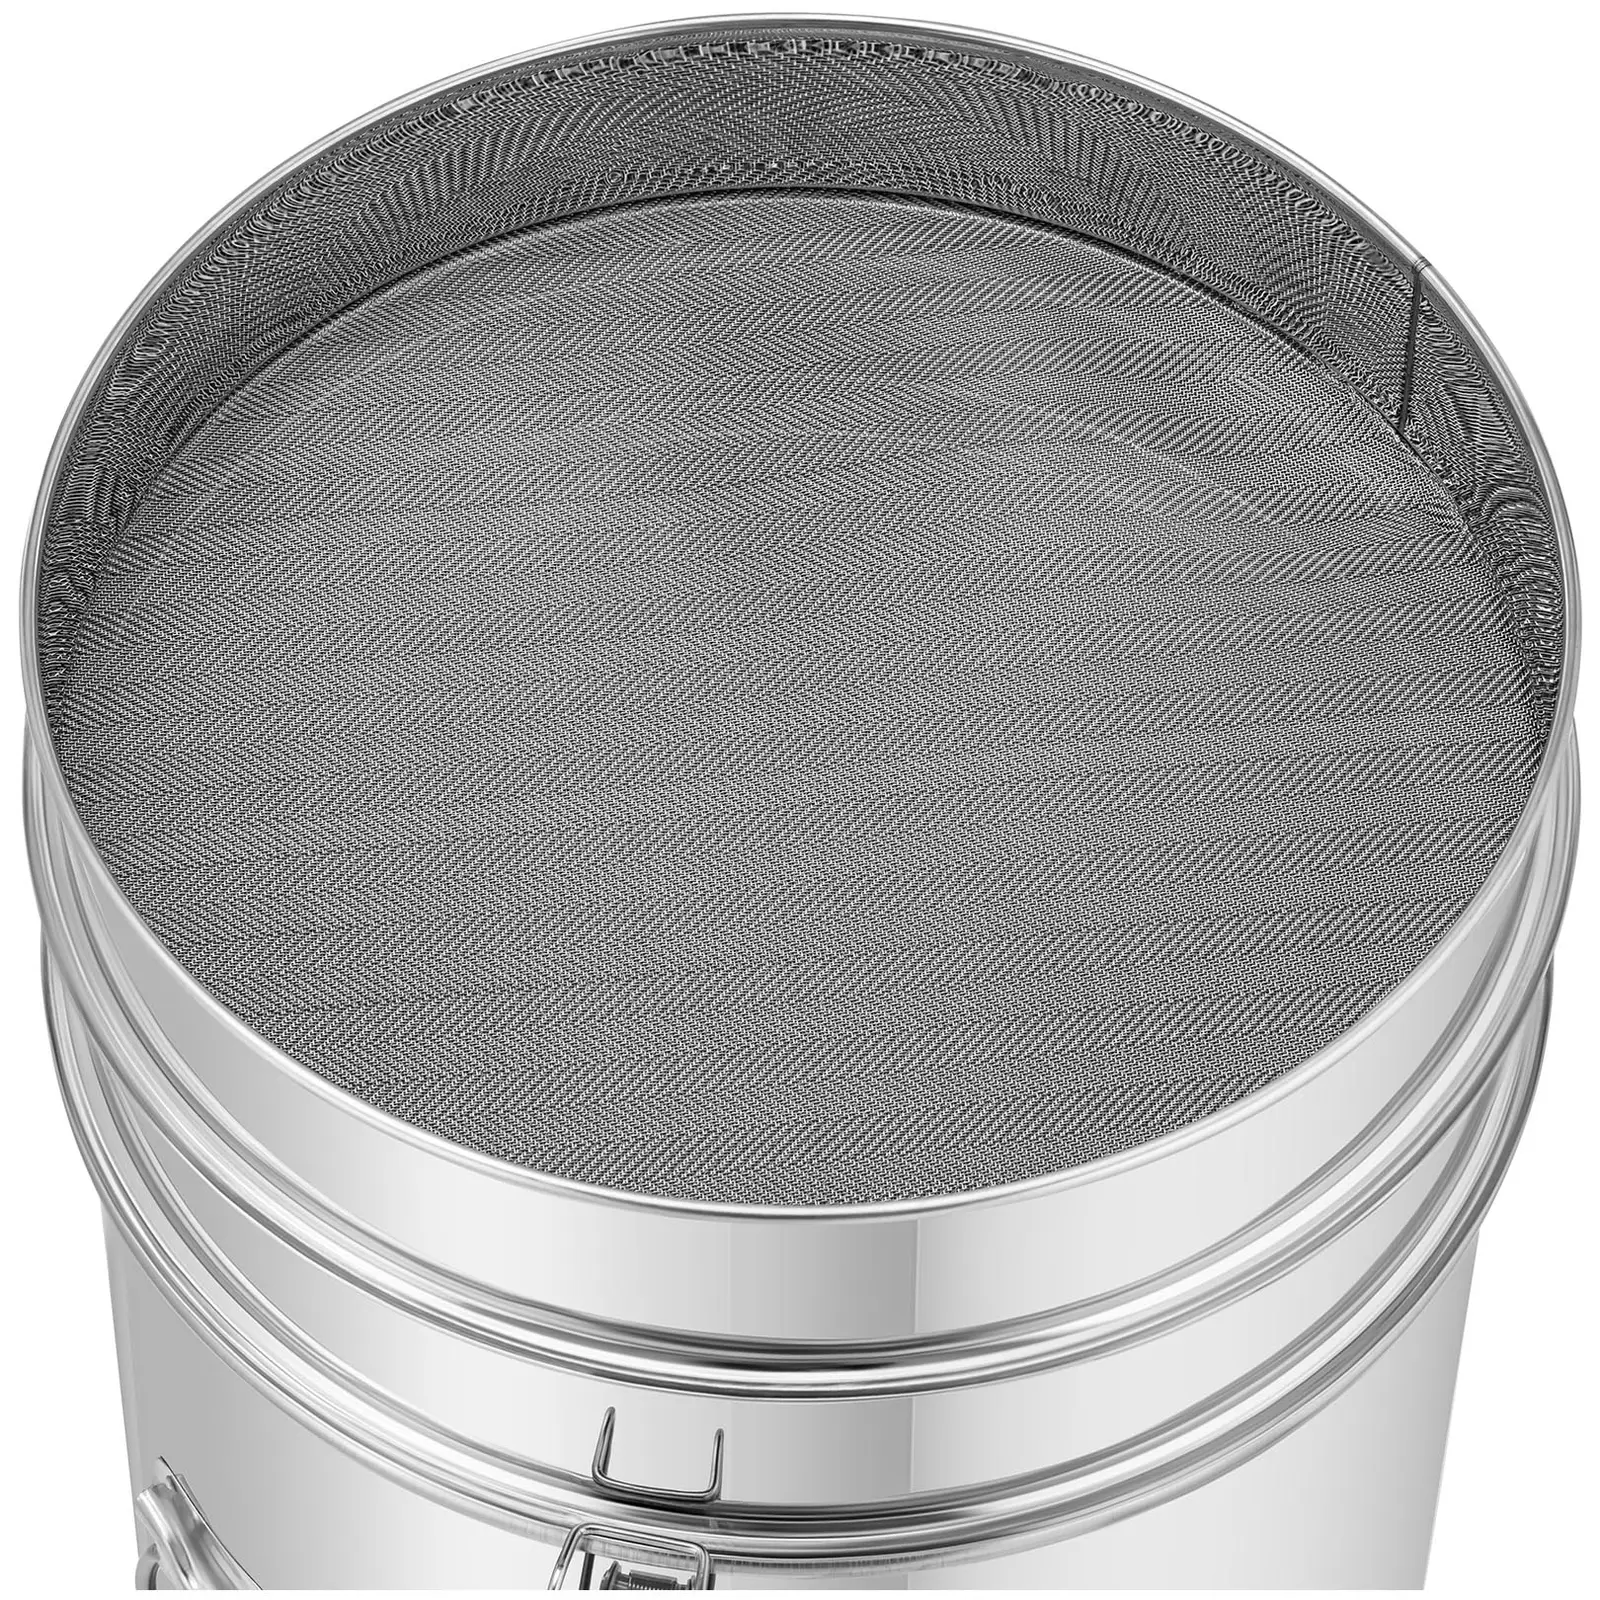 Separador de mel - 50 l - com filtro, tampa e válvula - aço inoxidável